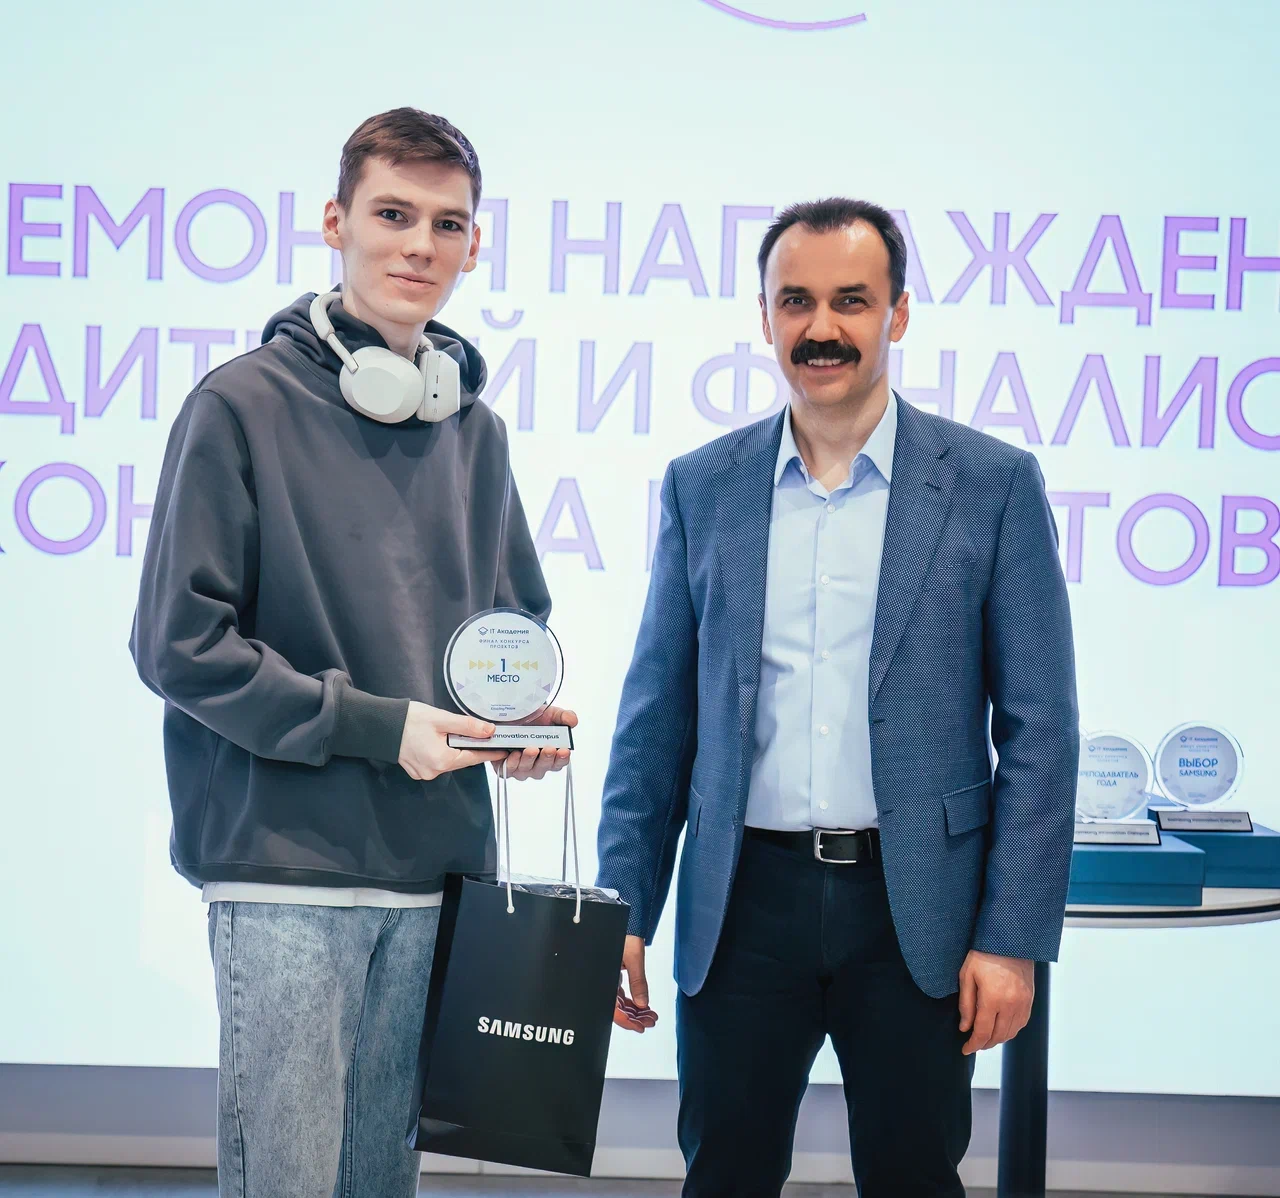 На церемонии награждения призеров конкурса: слева я, справа -- вице-президент Samsung Electronics Сергей Певнев